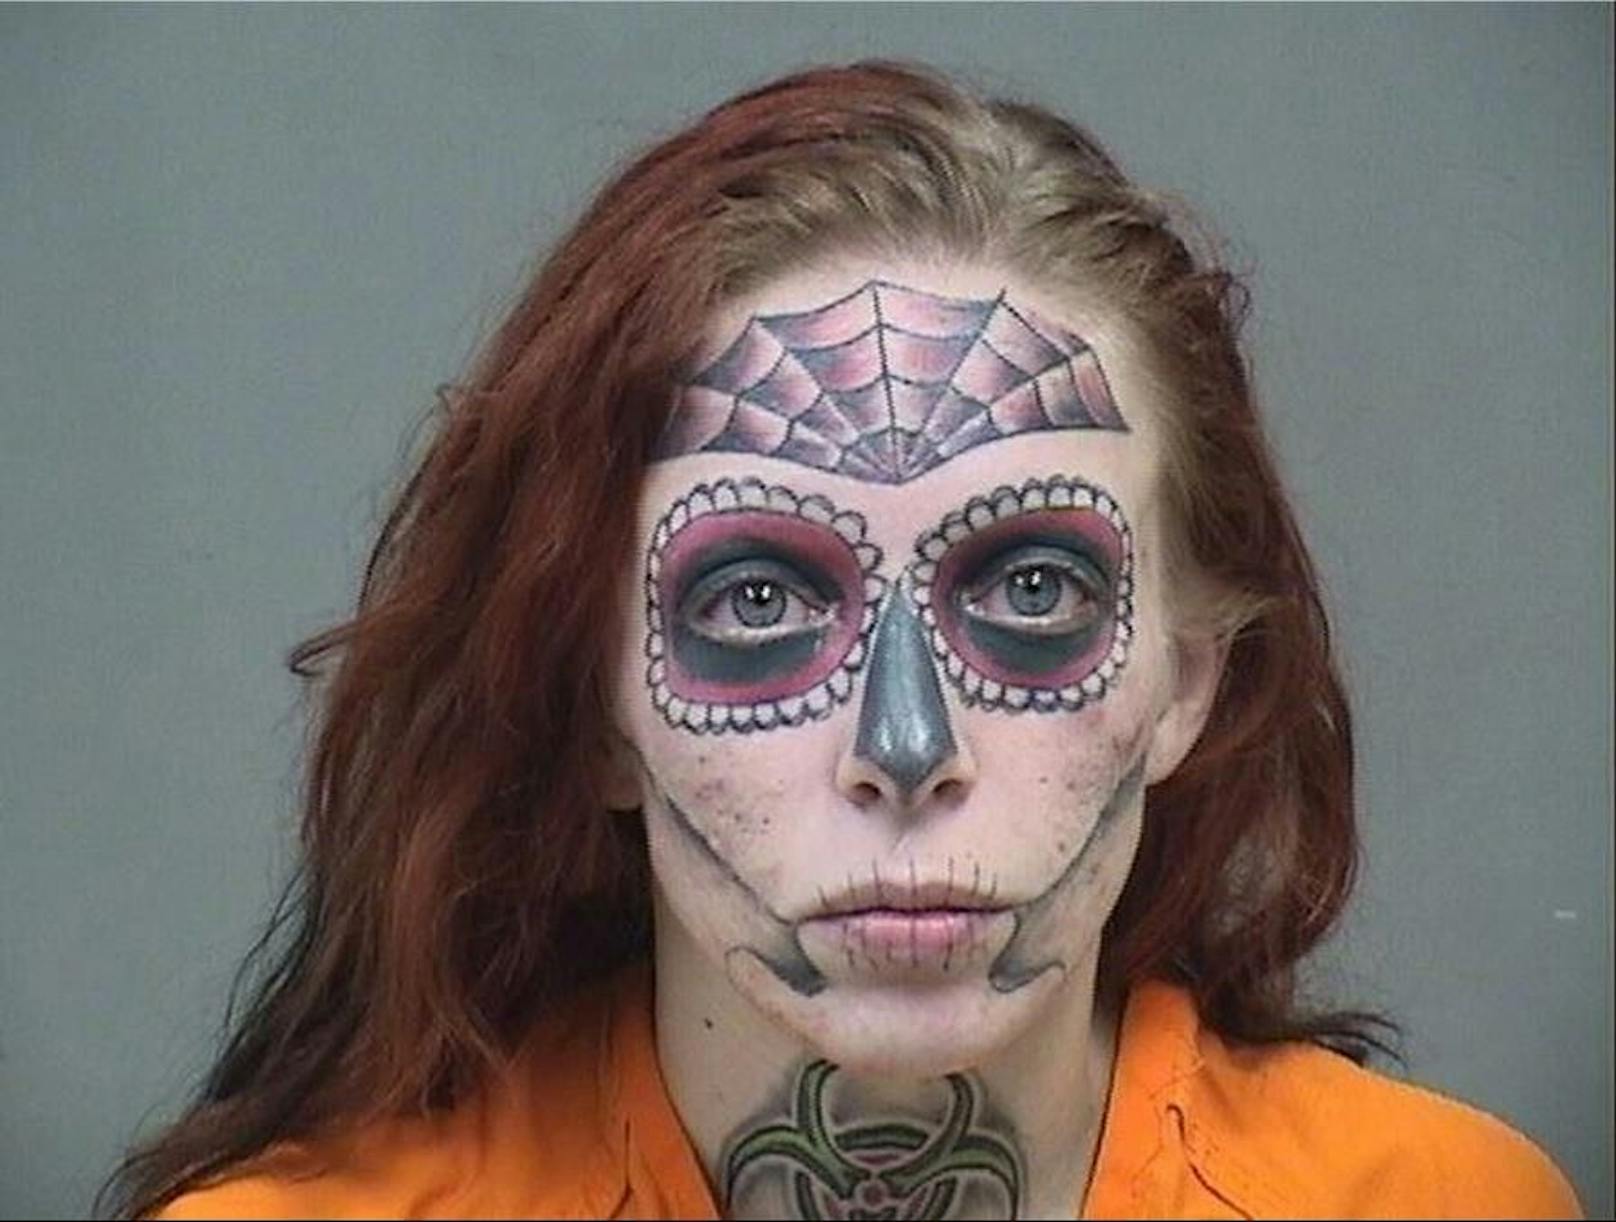 Das Fahndungsfoto von Alyssa Zebrasky ging 2018 viral, weil sich die Frau ein Skelett und ein Spinnennetz um die Augen, auf der Stirn und rund um den Mund hatte stechen lassen.